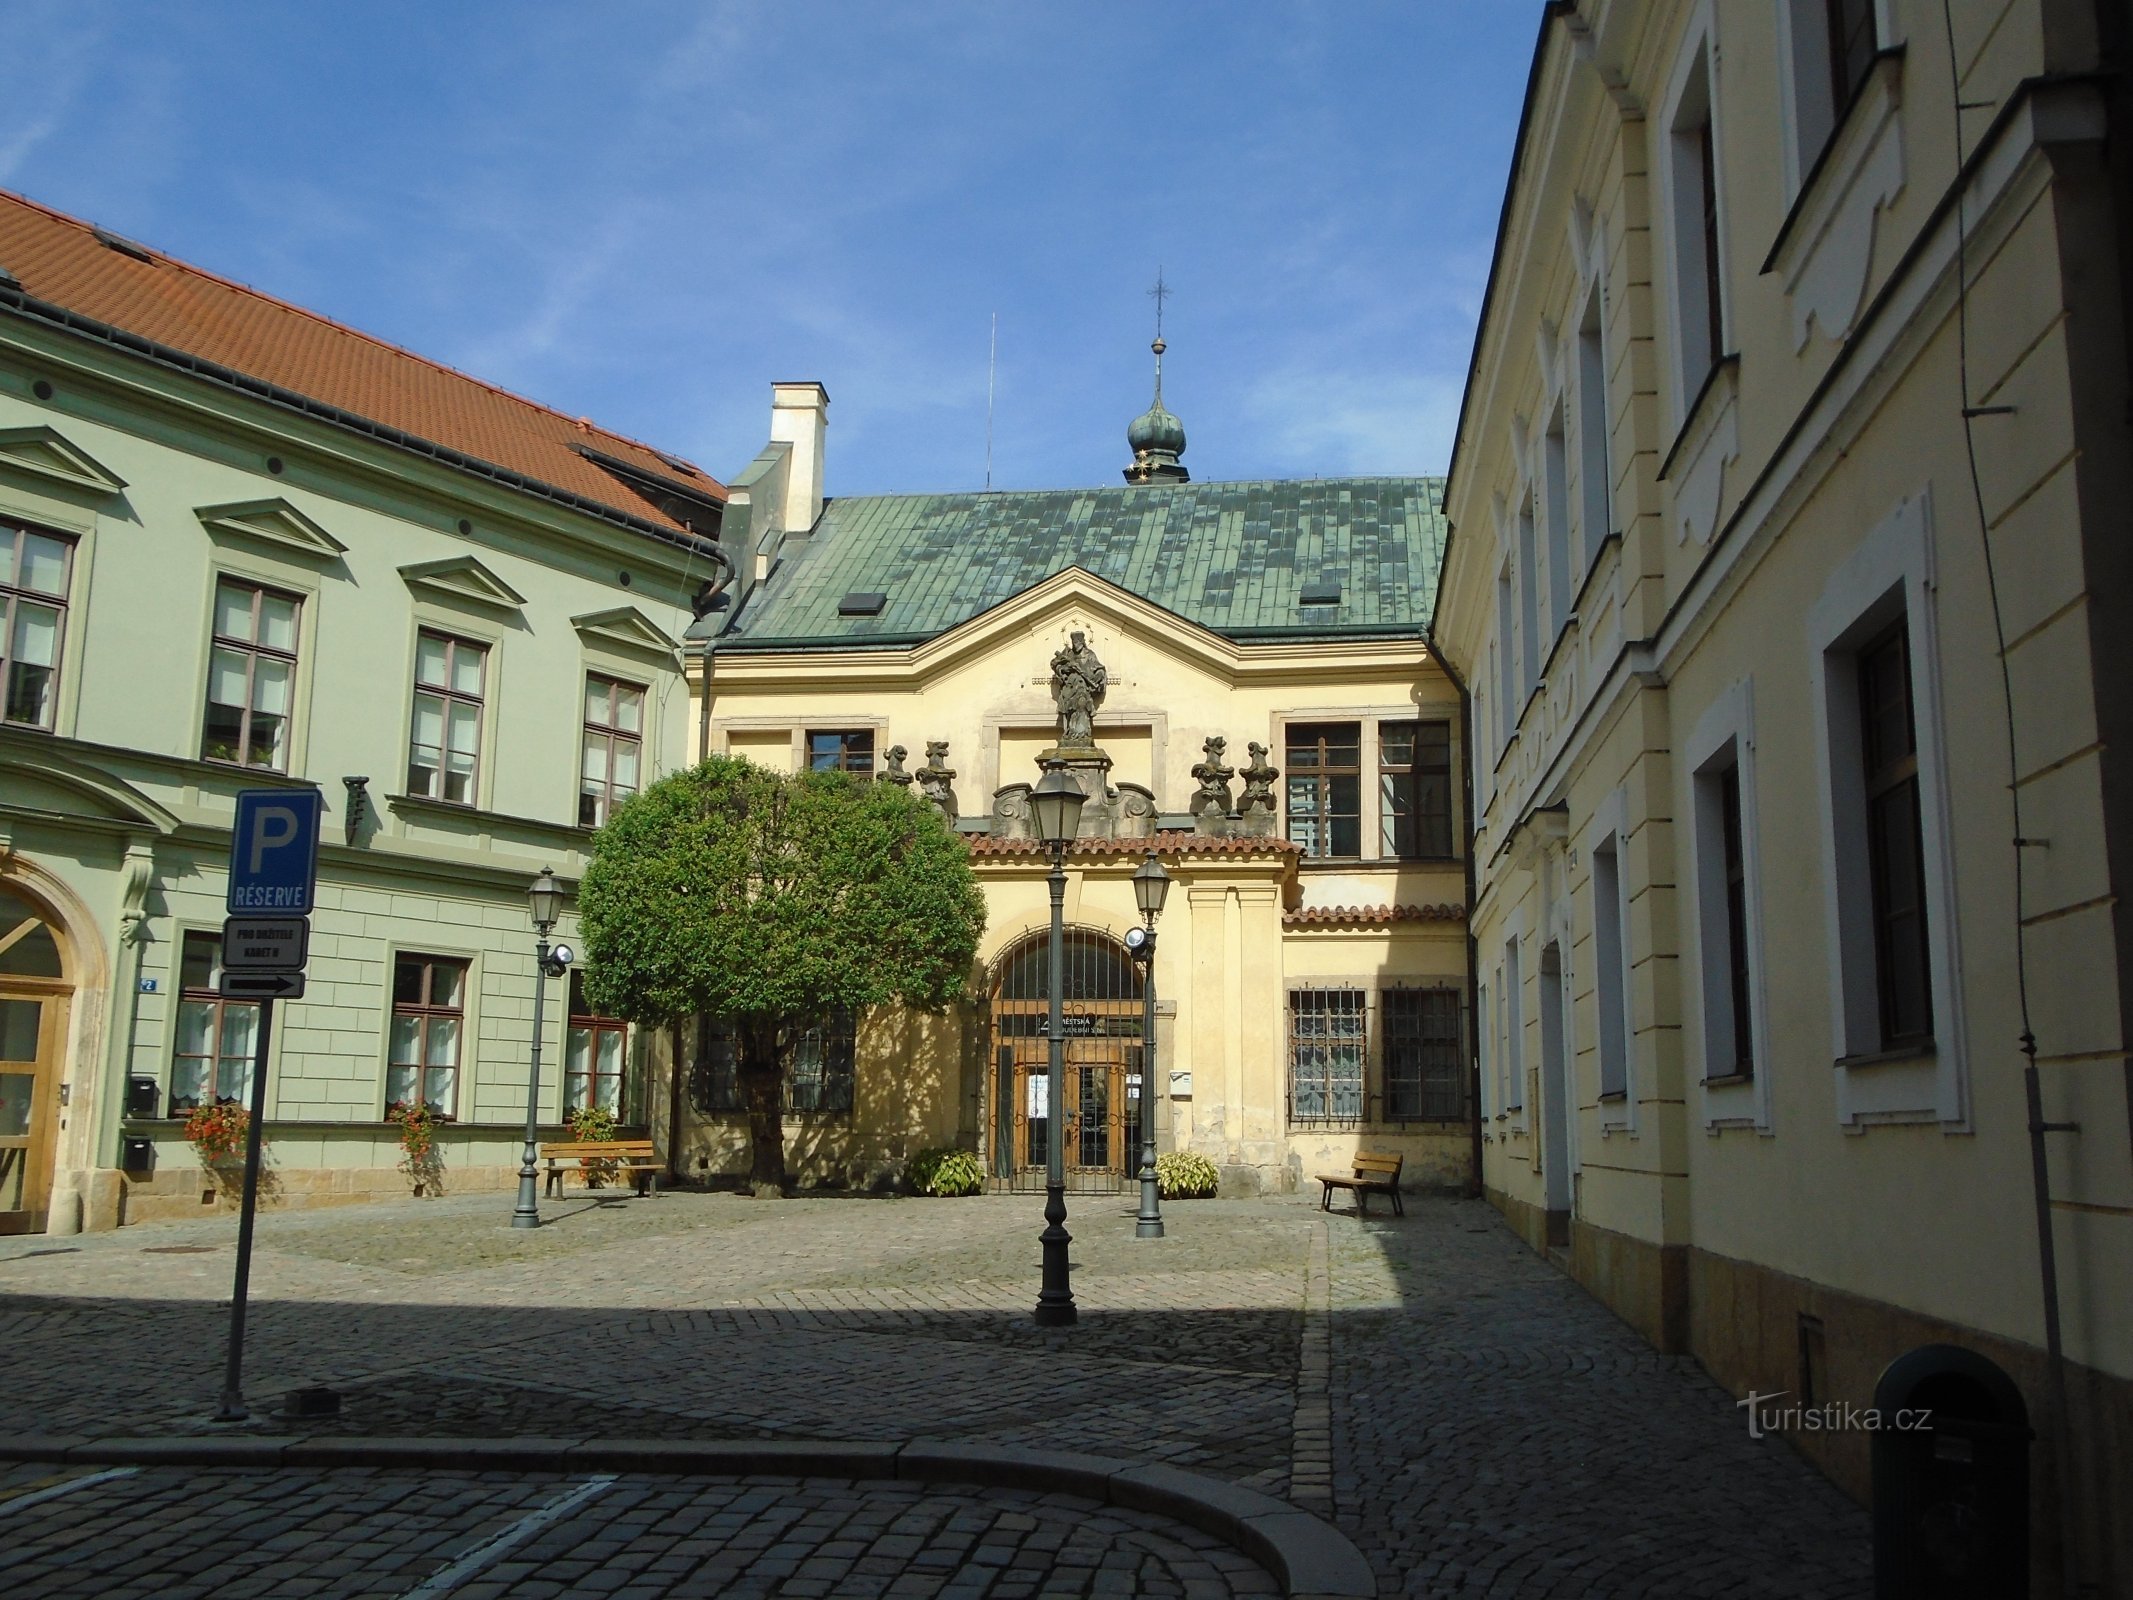 Tại lâu đài số 91 (Hradec Králové, 16.9.2018 tháng XNUMX năm XNUMX)